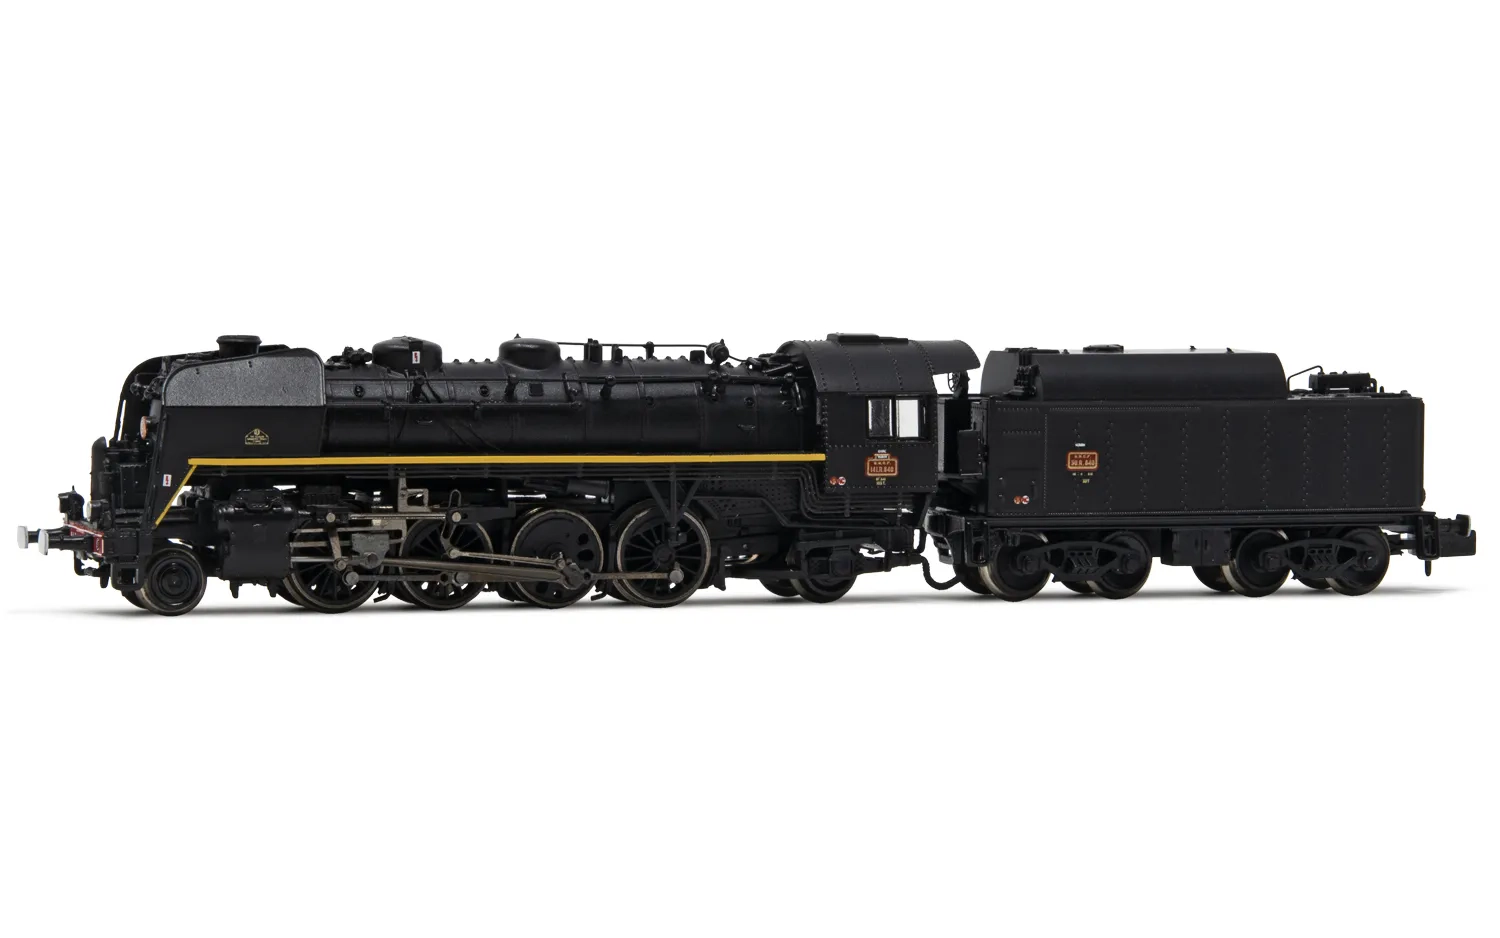 SNCF, Dampflokomotive 141 R 840, mit BoxpokRädern auf der Treibachse, Tender mit großem Ölbunker, in schwarzer Lackierung mit gelber Linie, Ep. III